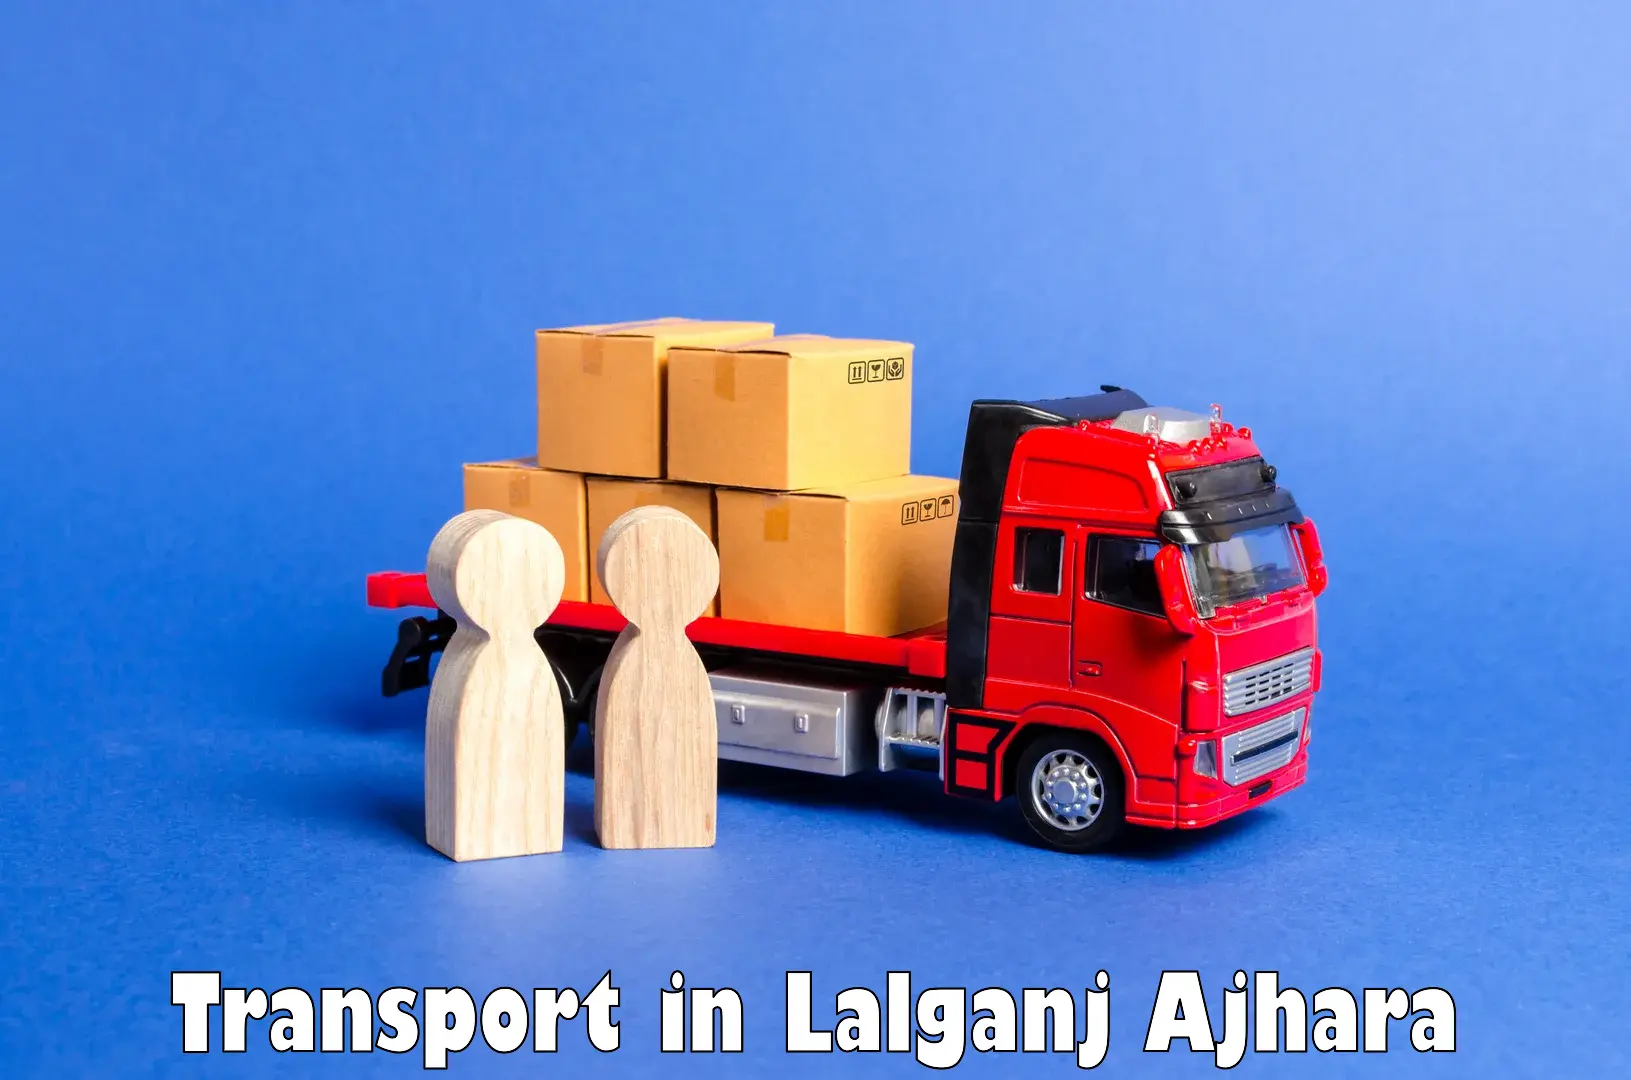 Goods delivery service in Lalganj Ajhara